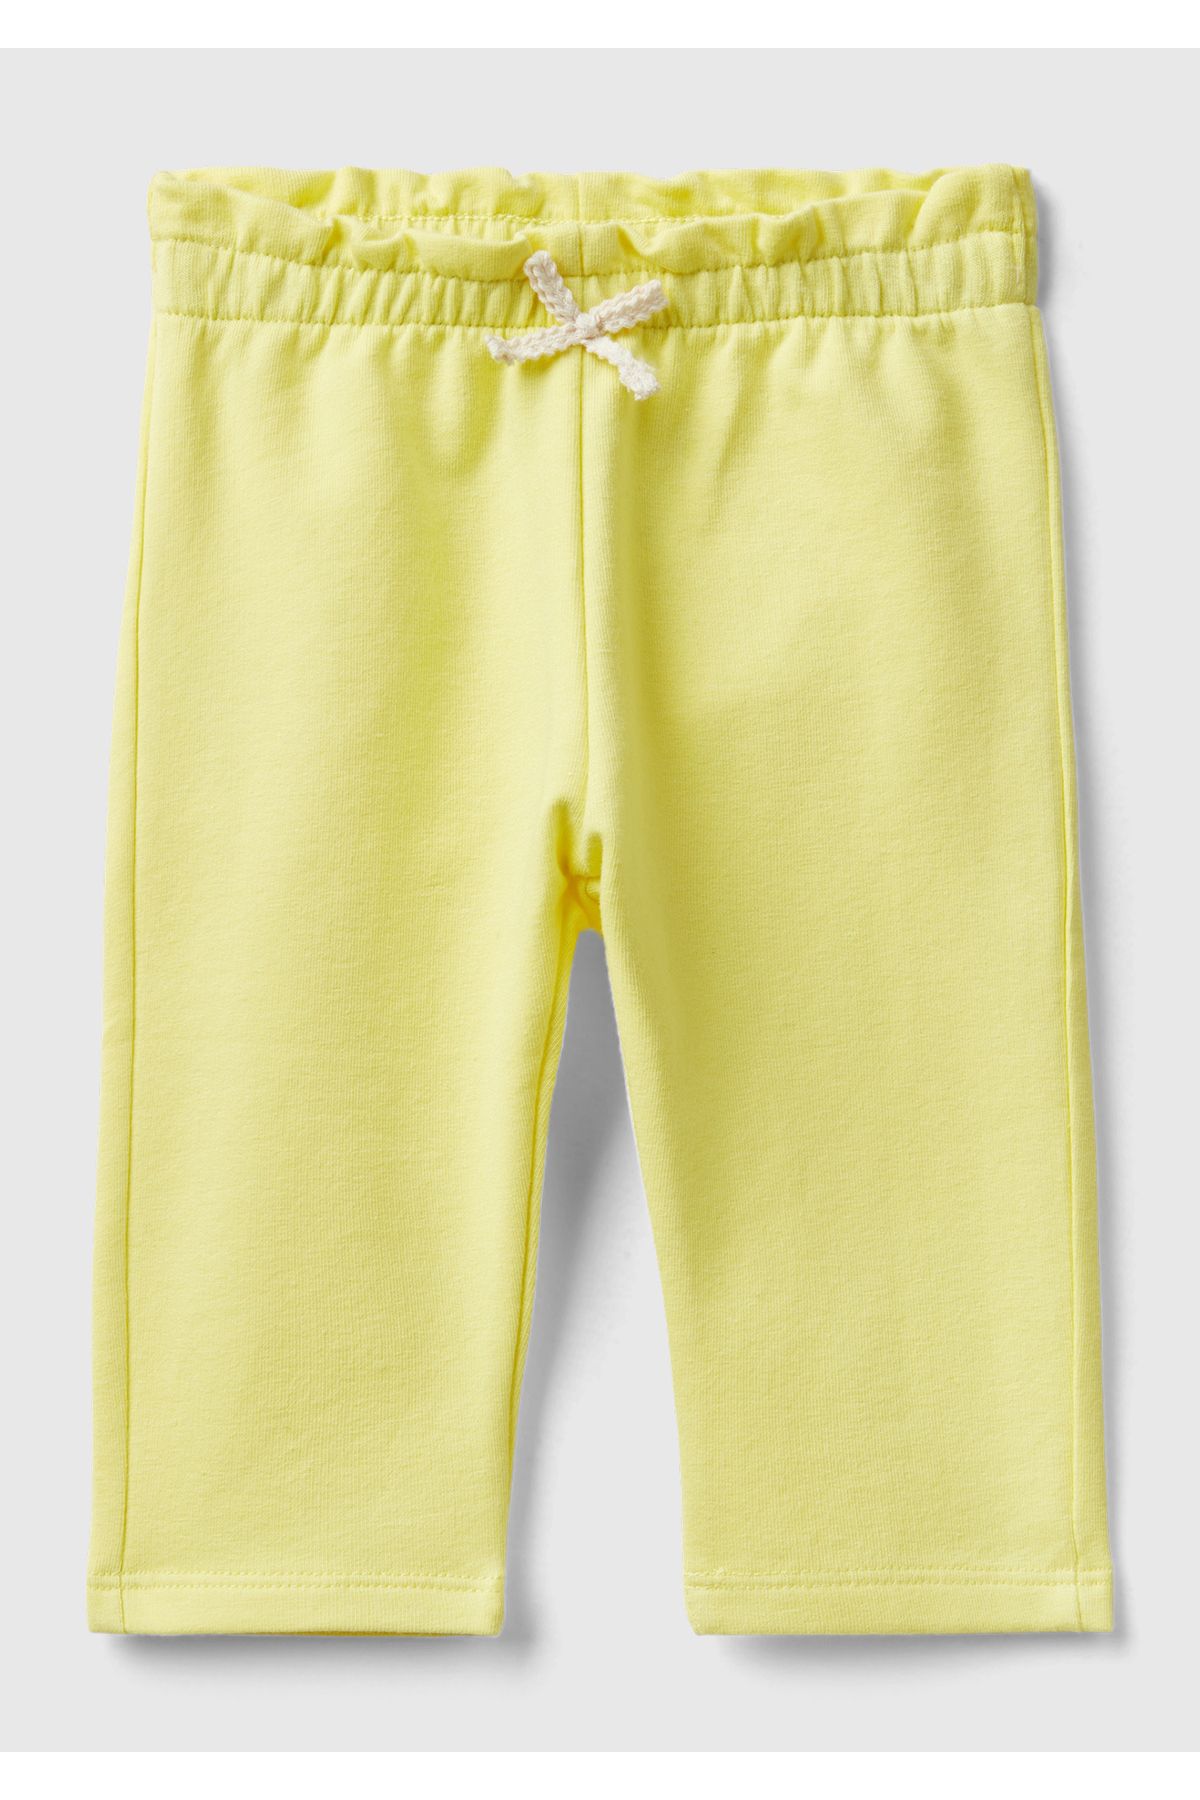 United Colors of Benetton Bebek Sarı Cebi Nakış İşlemeli Beli Büzgülü Fiyonk Detaylı Pantolon